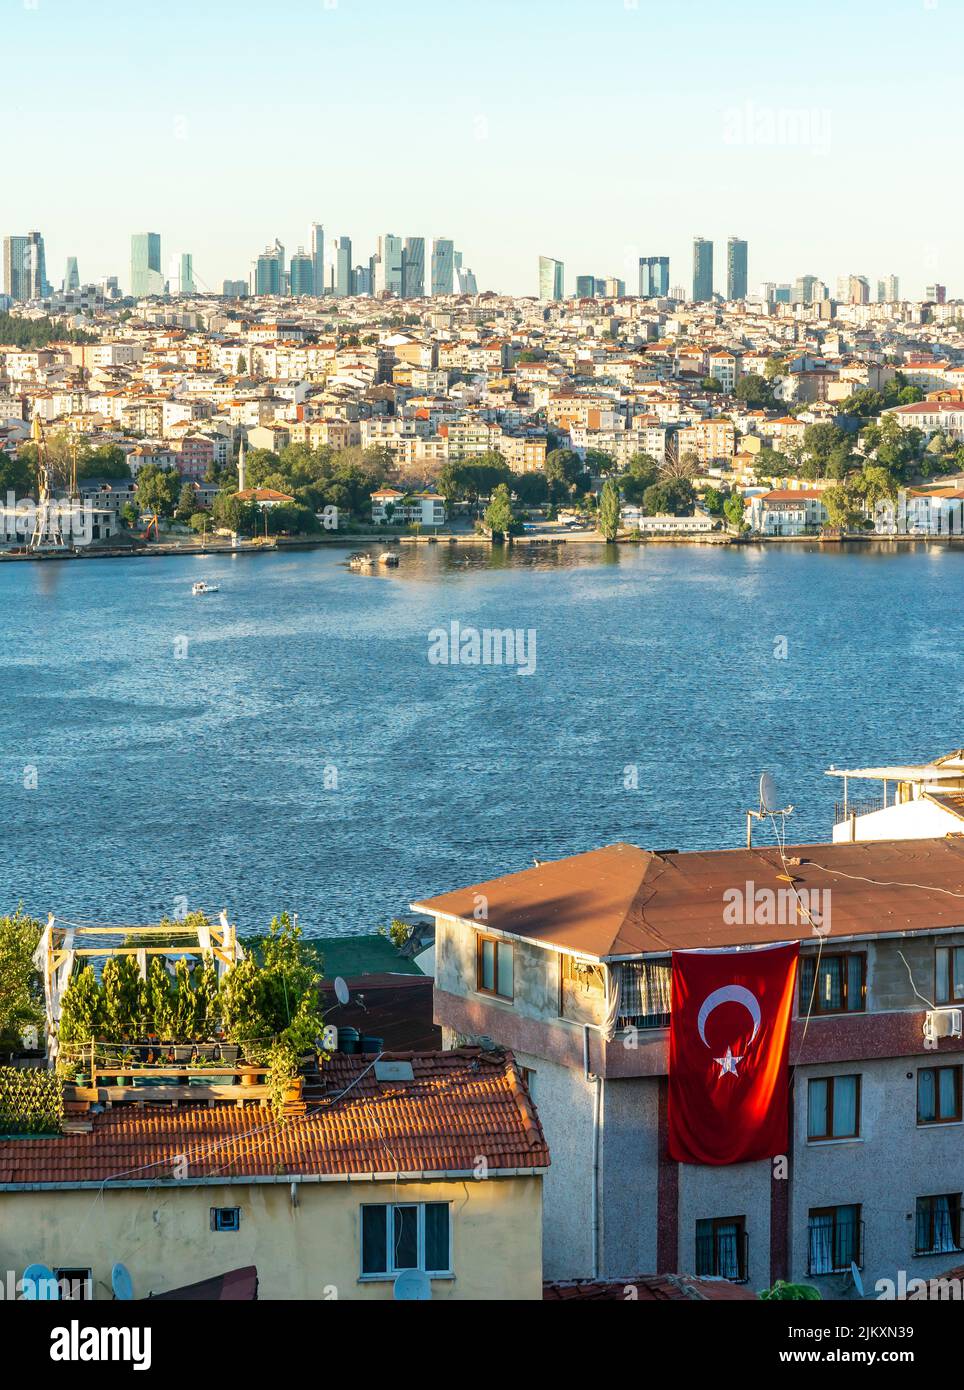 Vista panorámica superior del barrio de Balat y el Cuerno de Oro, Fatih, Estambul, Turquía, lado europeo Foto de stock